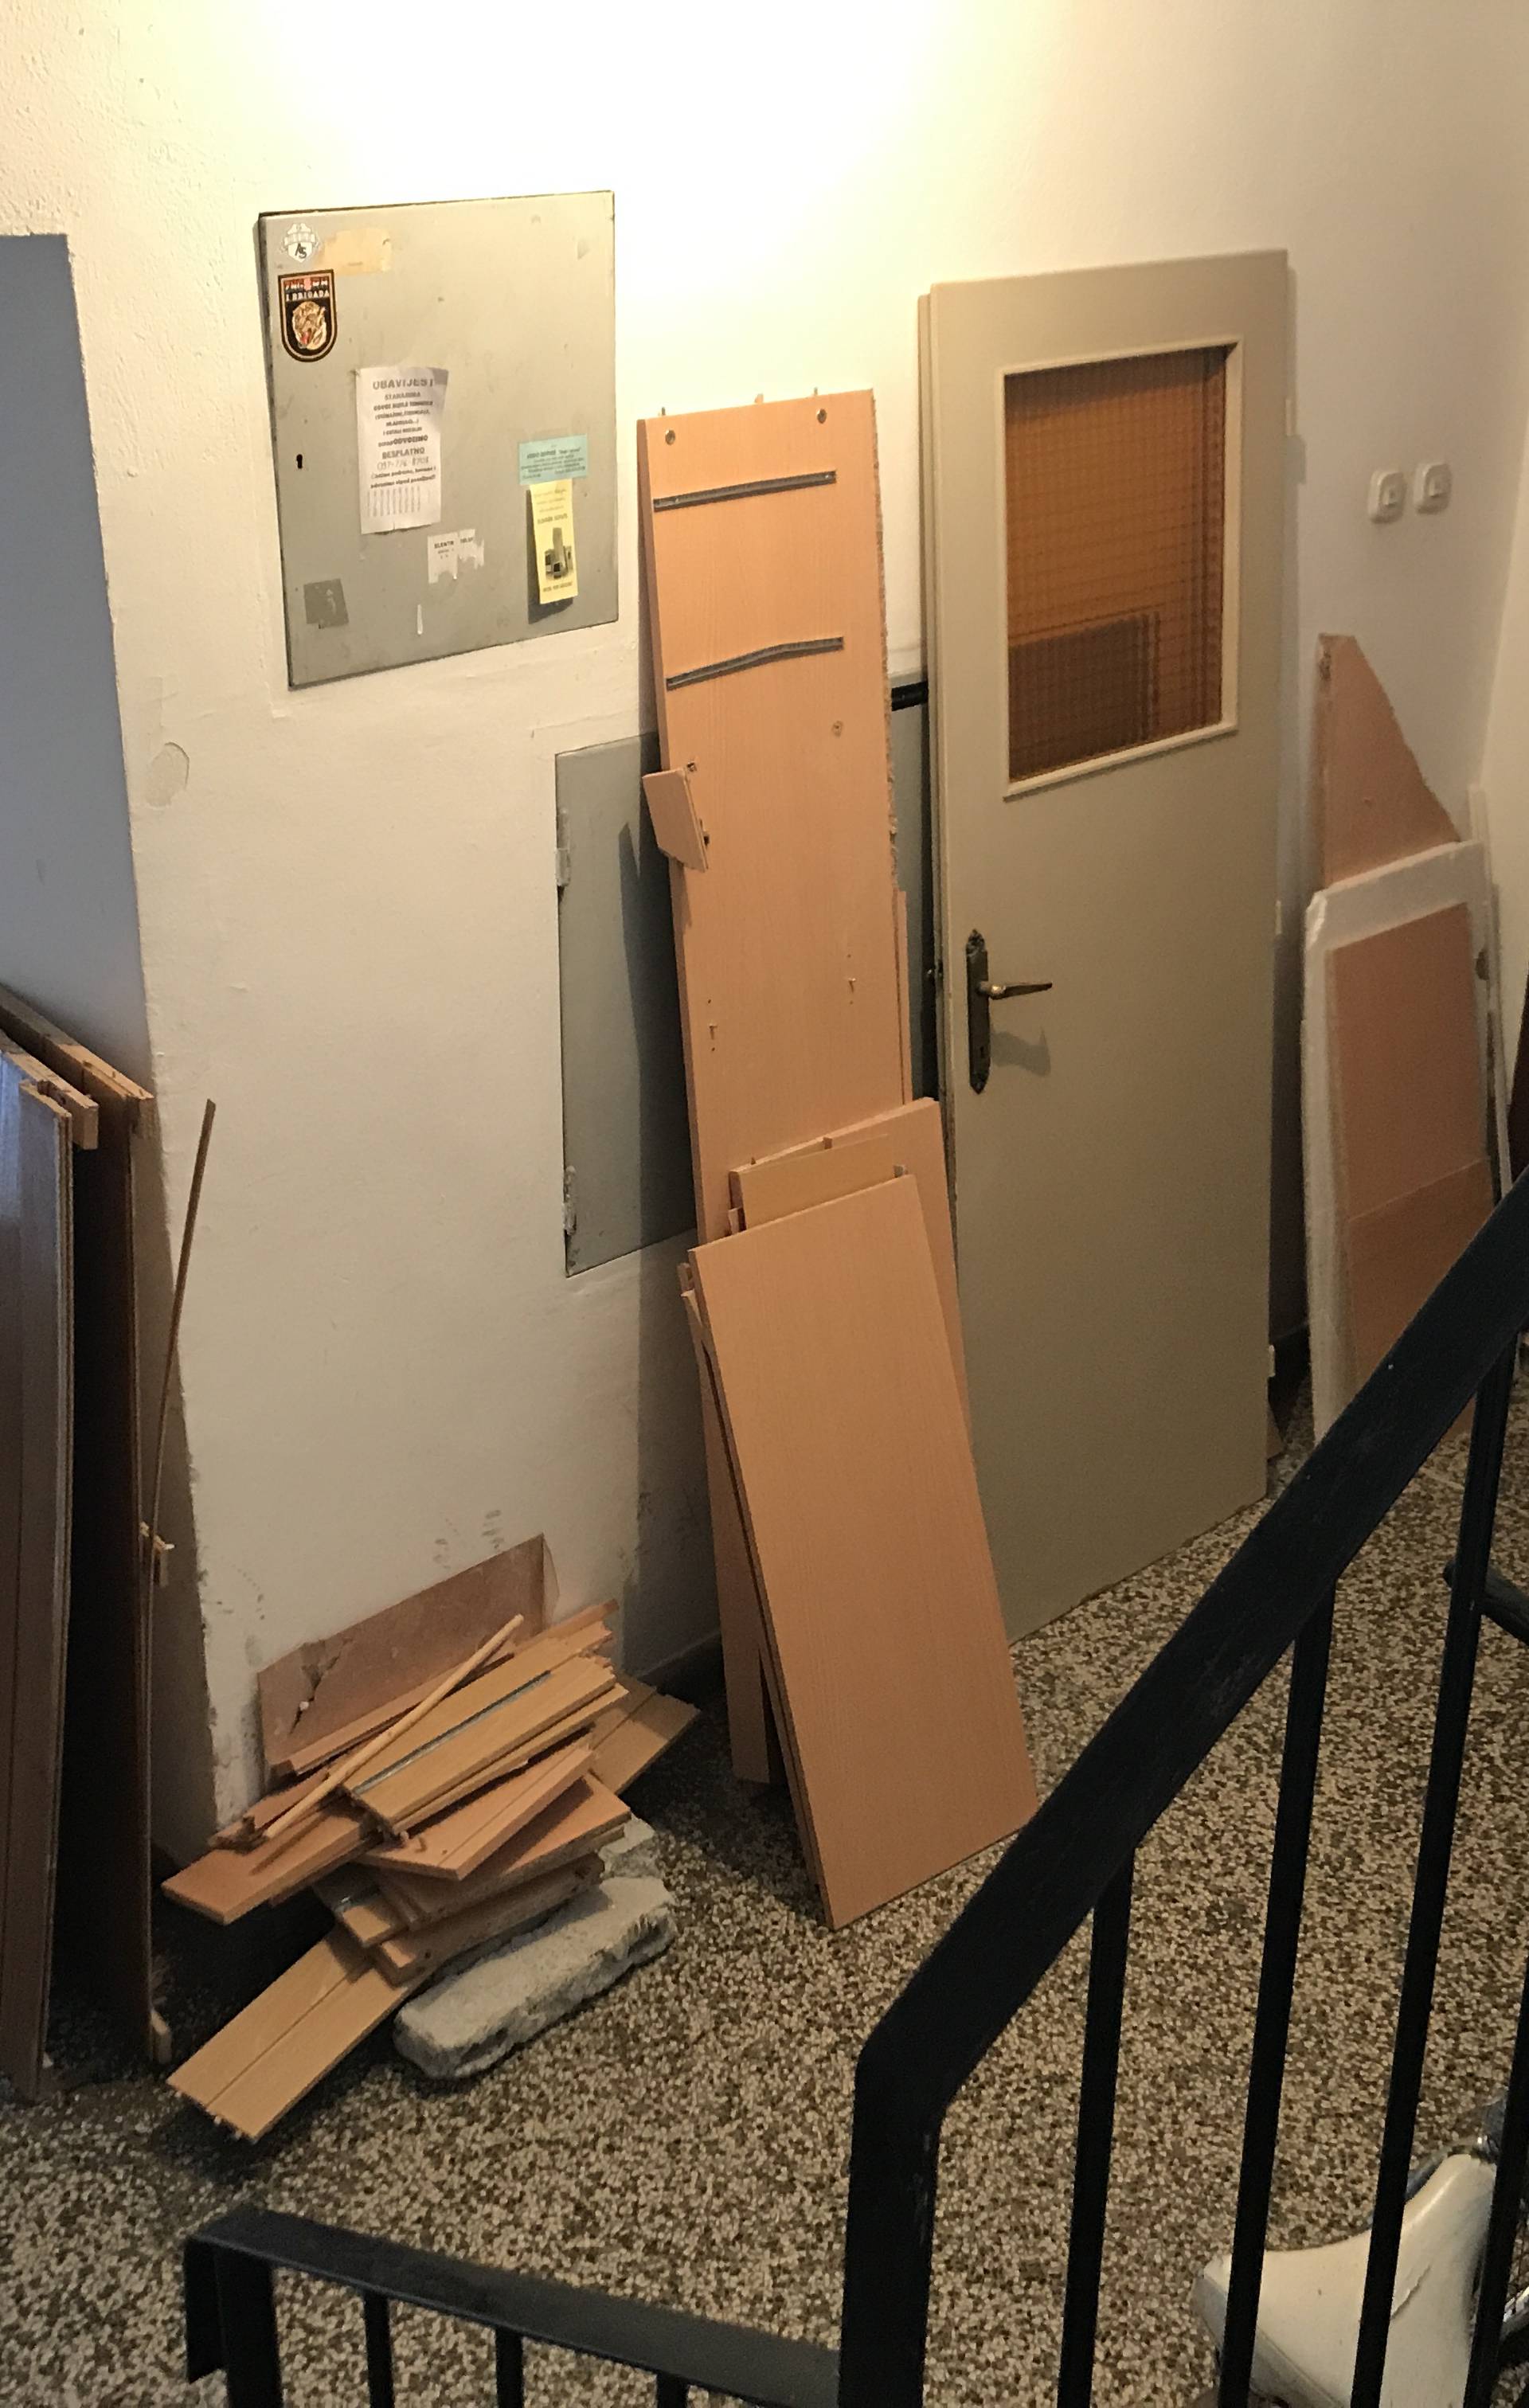 Splićanin radio kemijski pokus u stanu: U eksploziji urušio zid